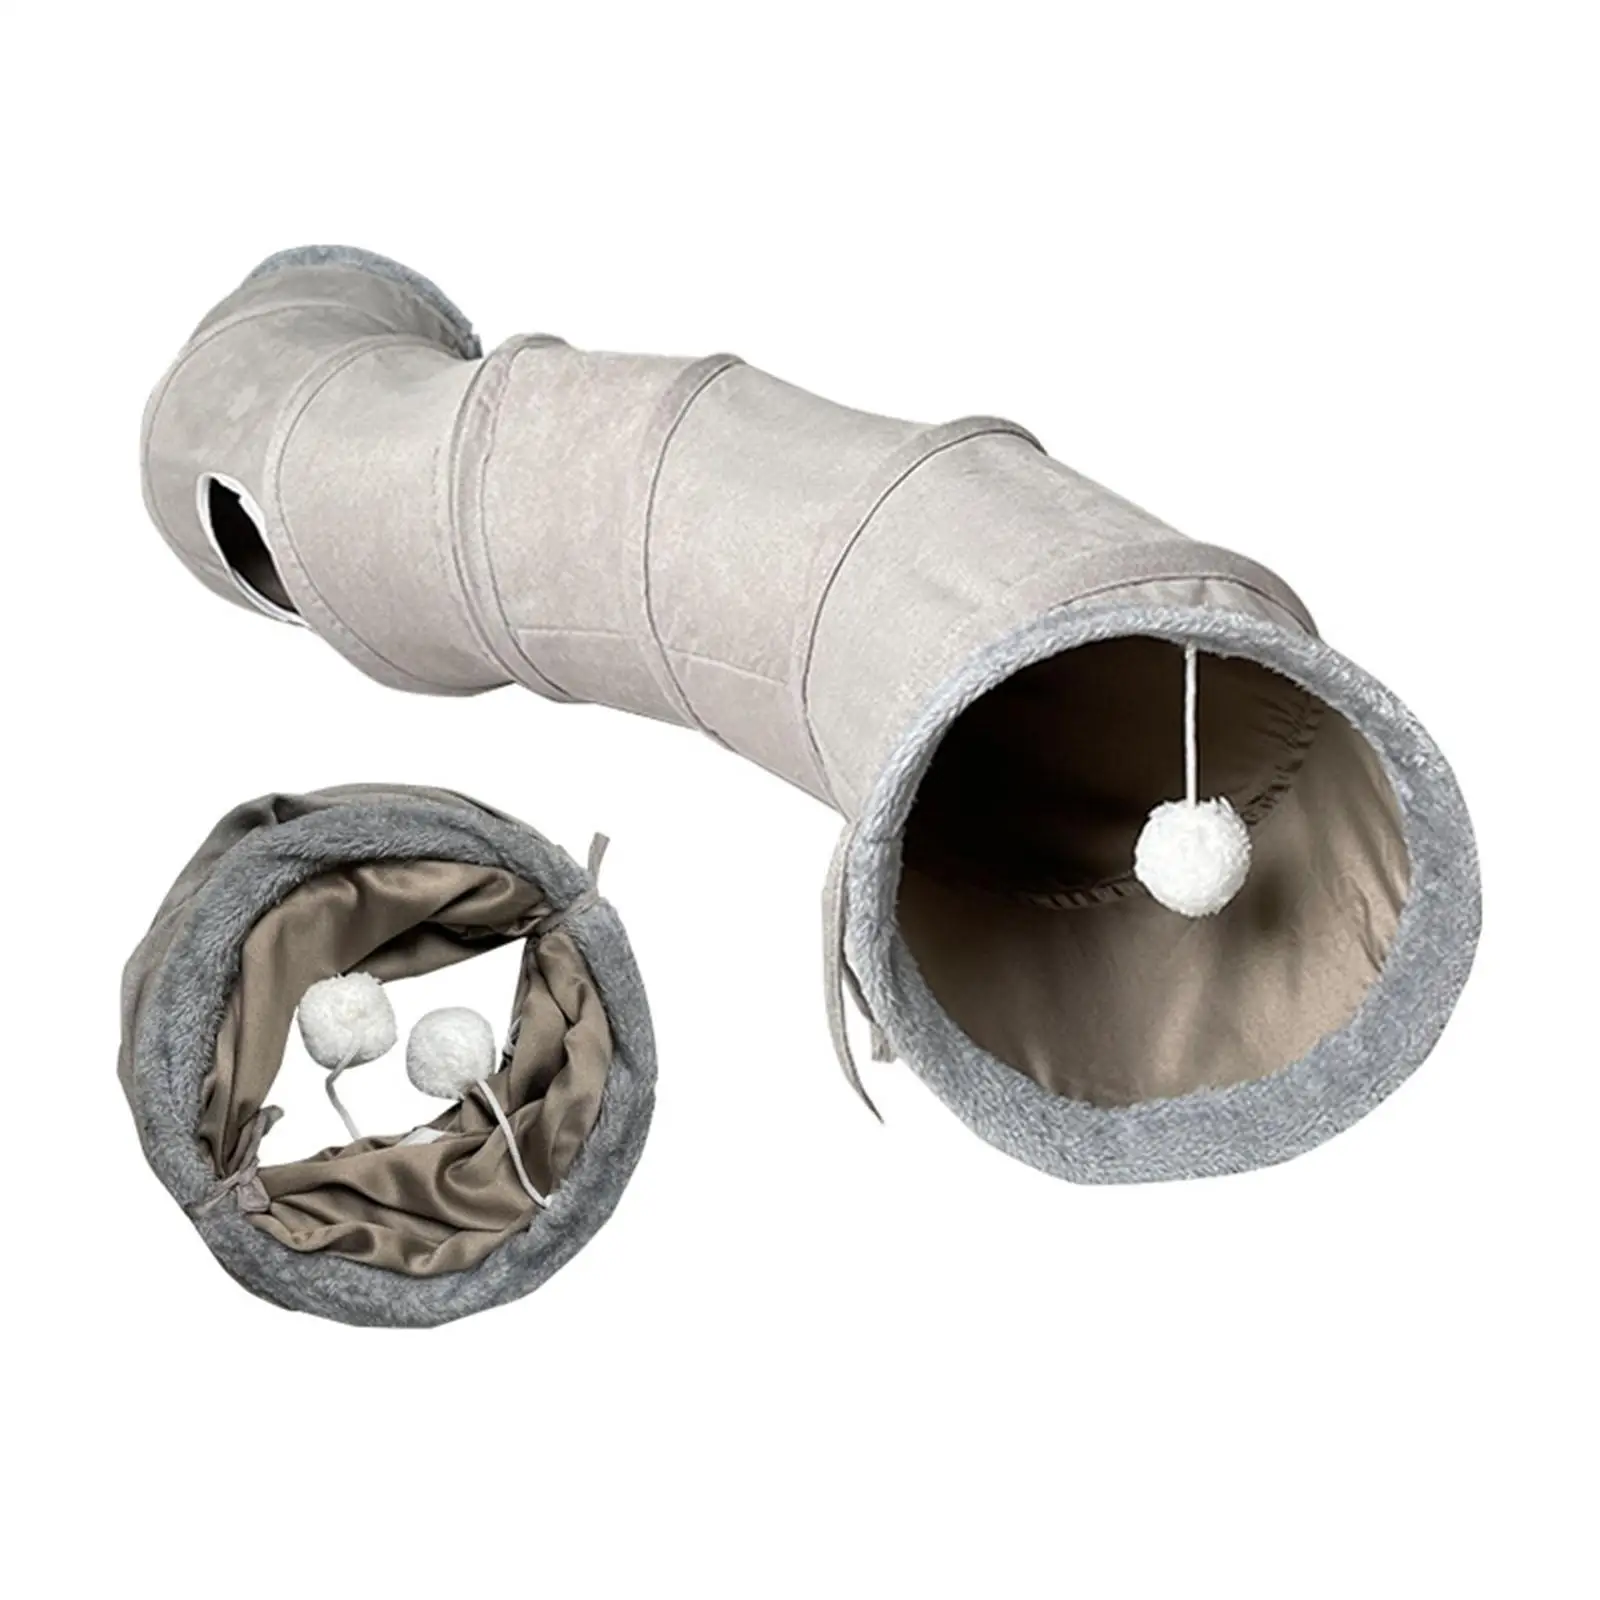 

Складной туннель для кошек, с отверстием для котят, S-образный тоннель для домашних животных, 10,63 дюйма в диаметре, игрушка для игр